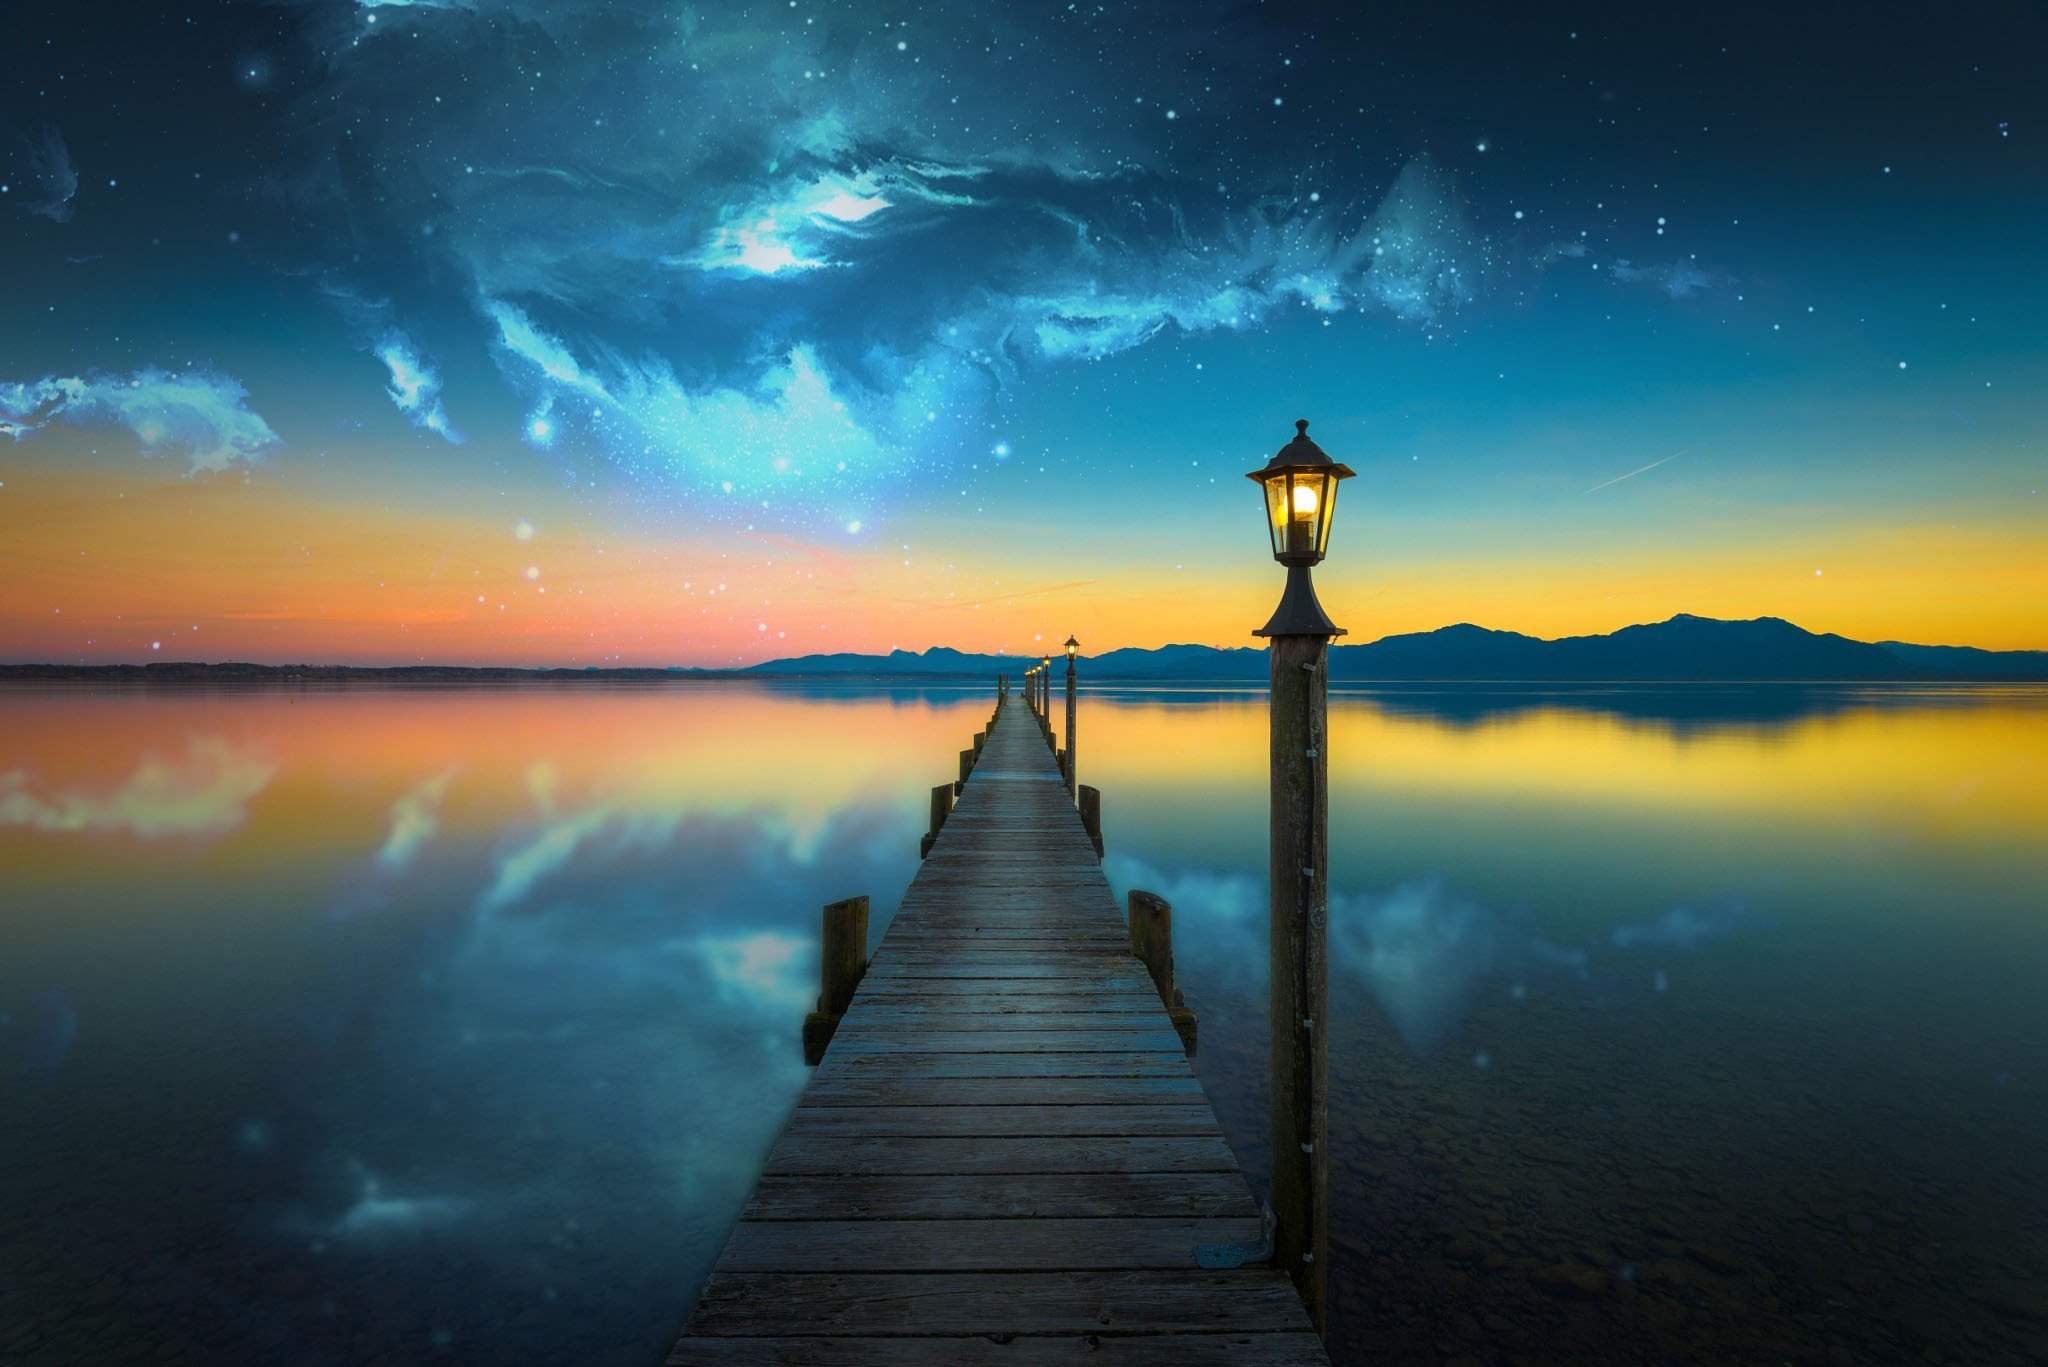 nebula, Space, Lake, Evening, Photo manipulation, Bridge  